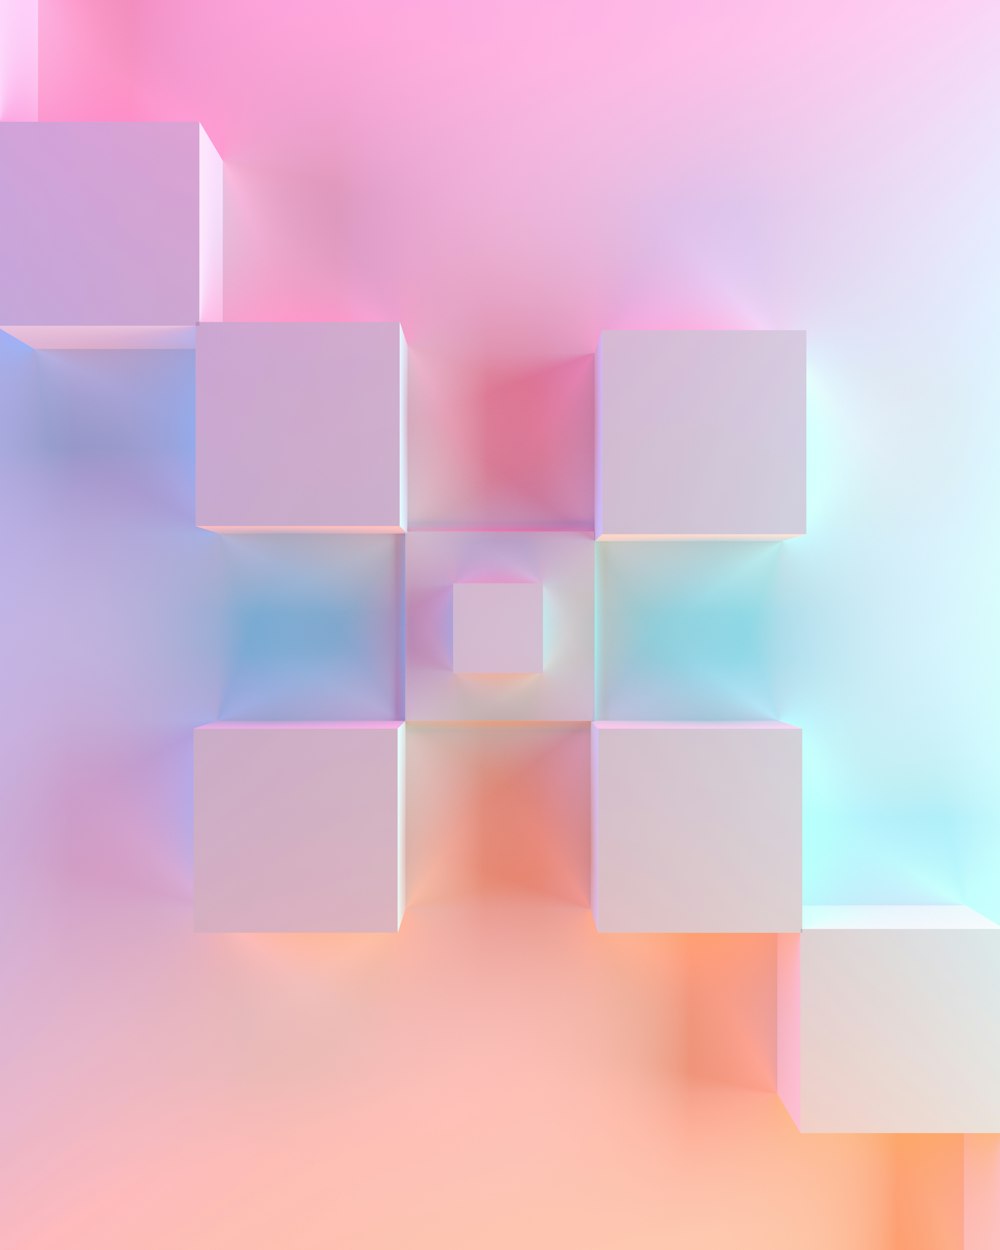 Una imagen borrosa de cubos sobre un fondo rosa y azul